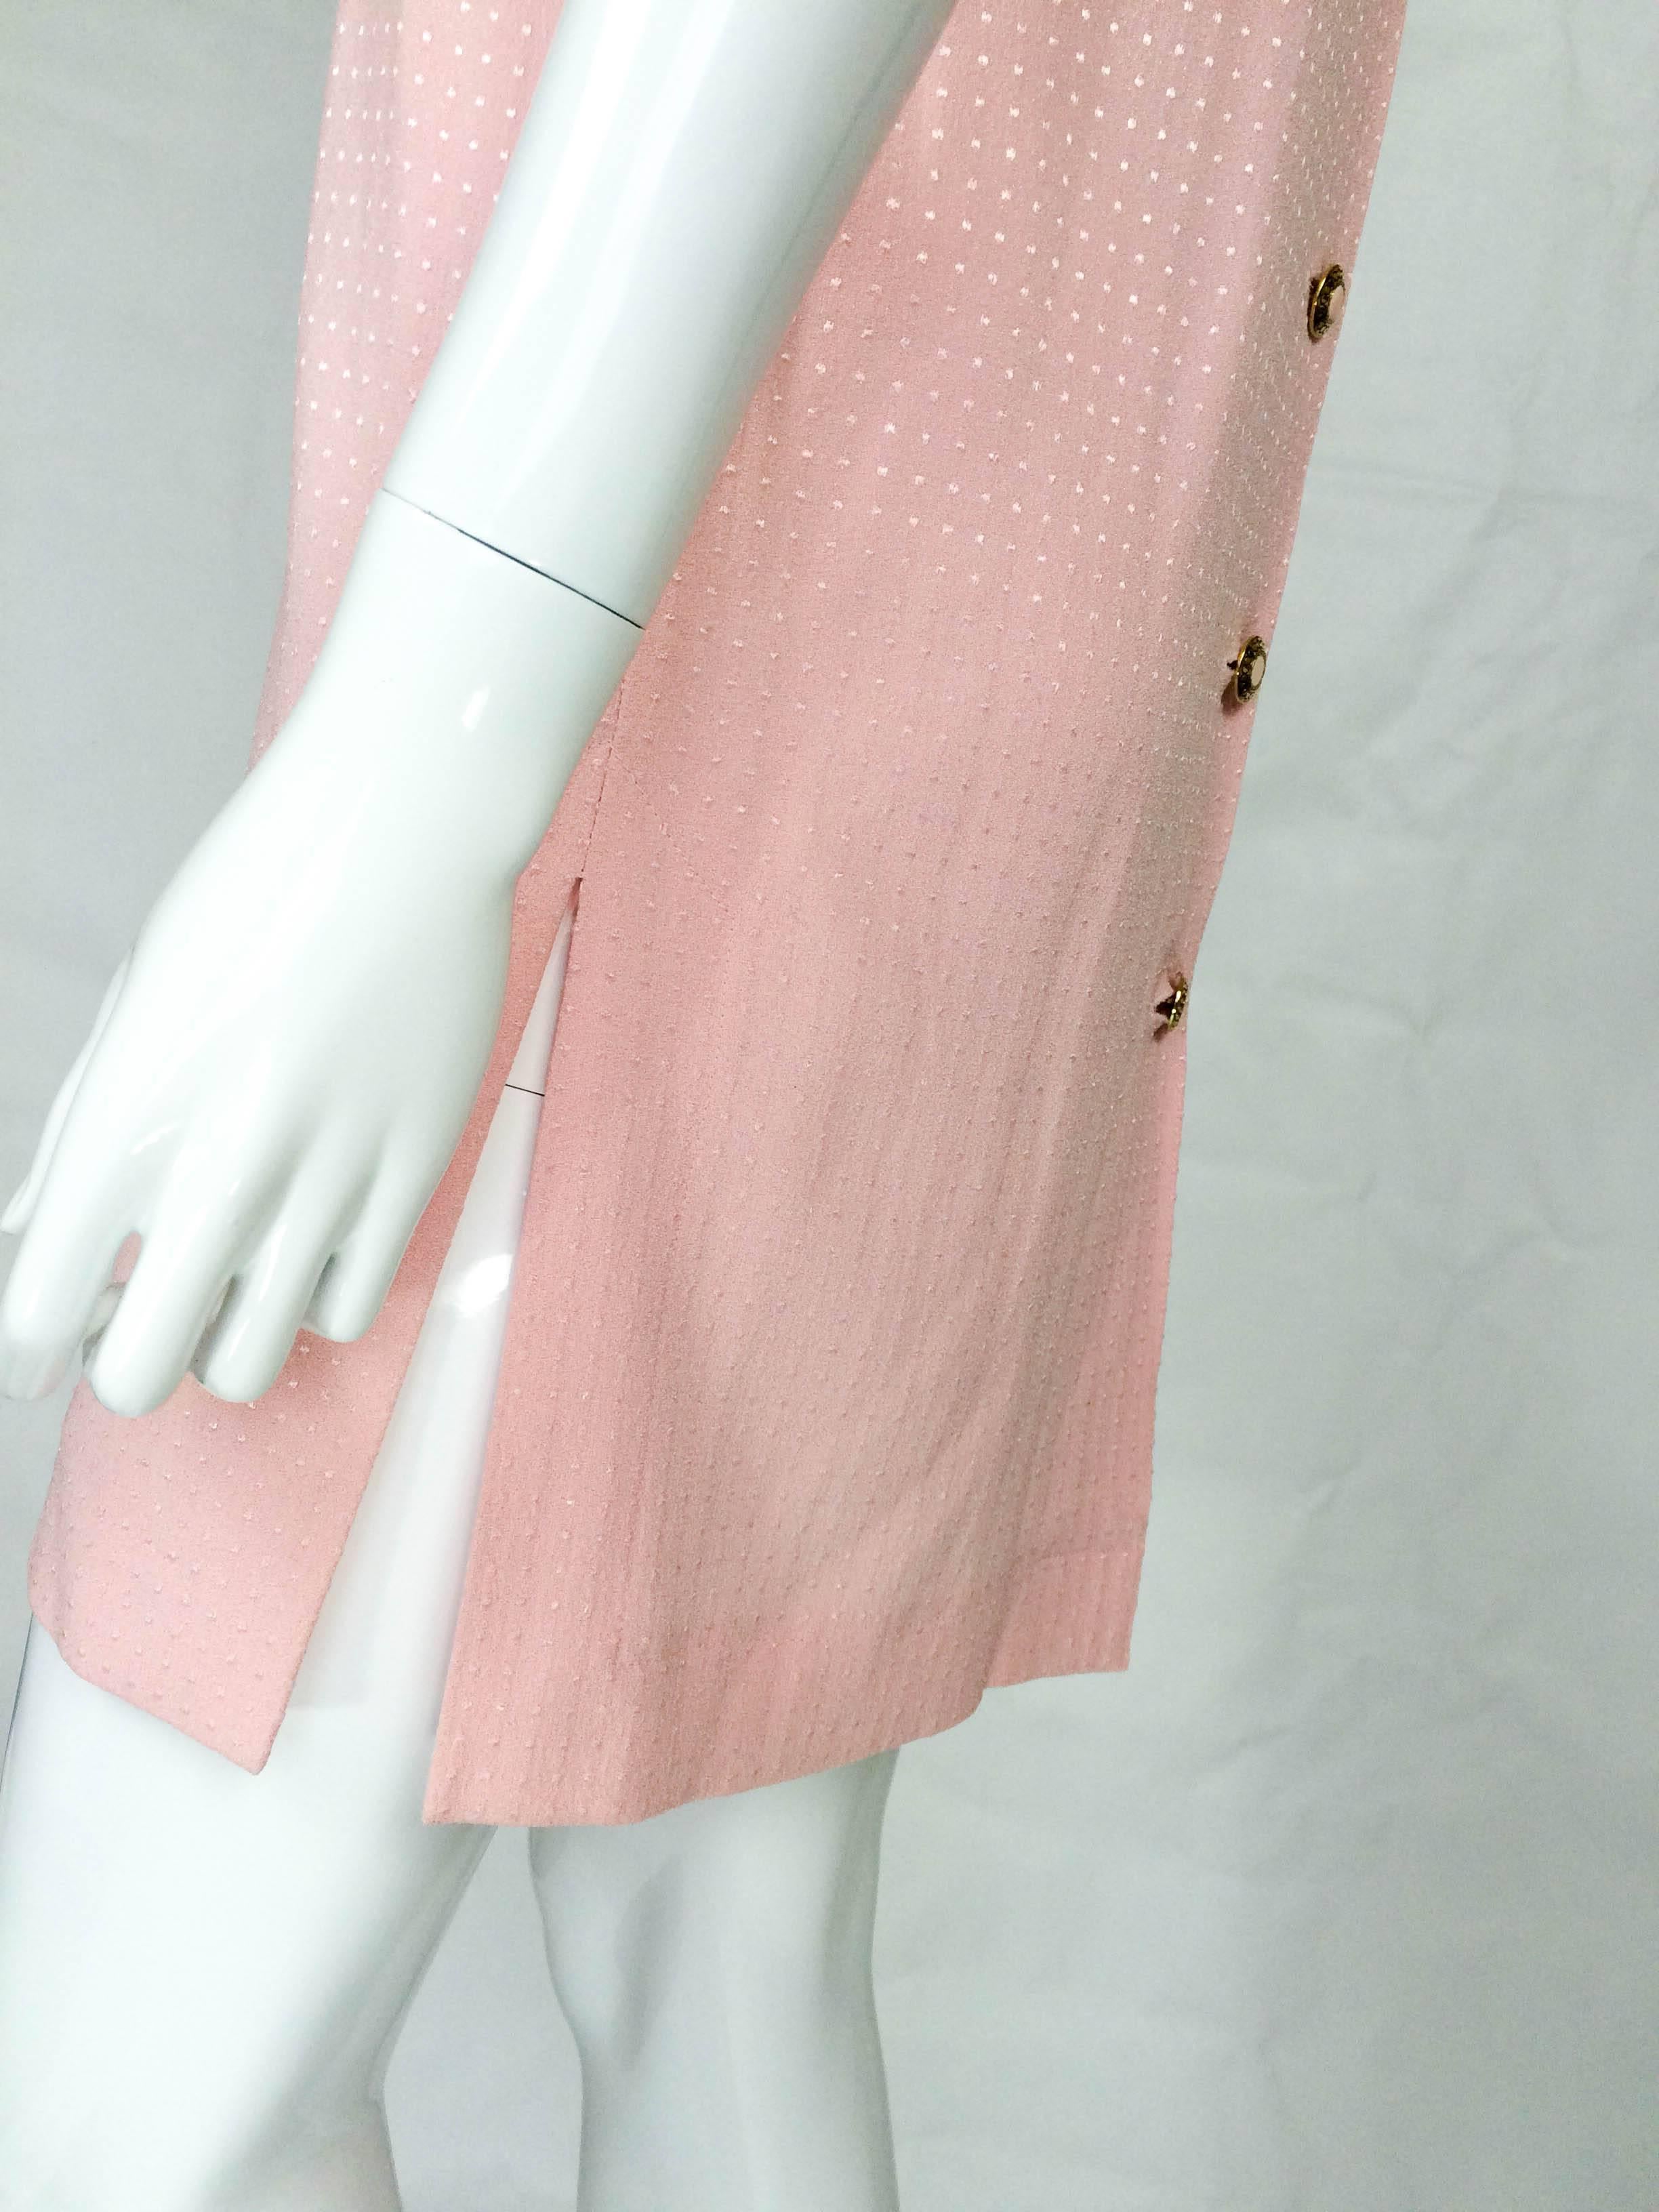 Jean Muir Pink Mini Dress - 1980s 1